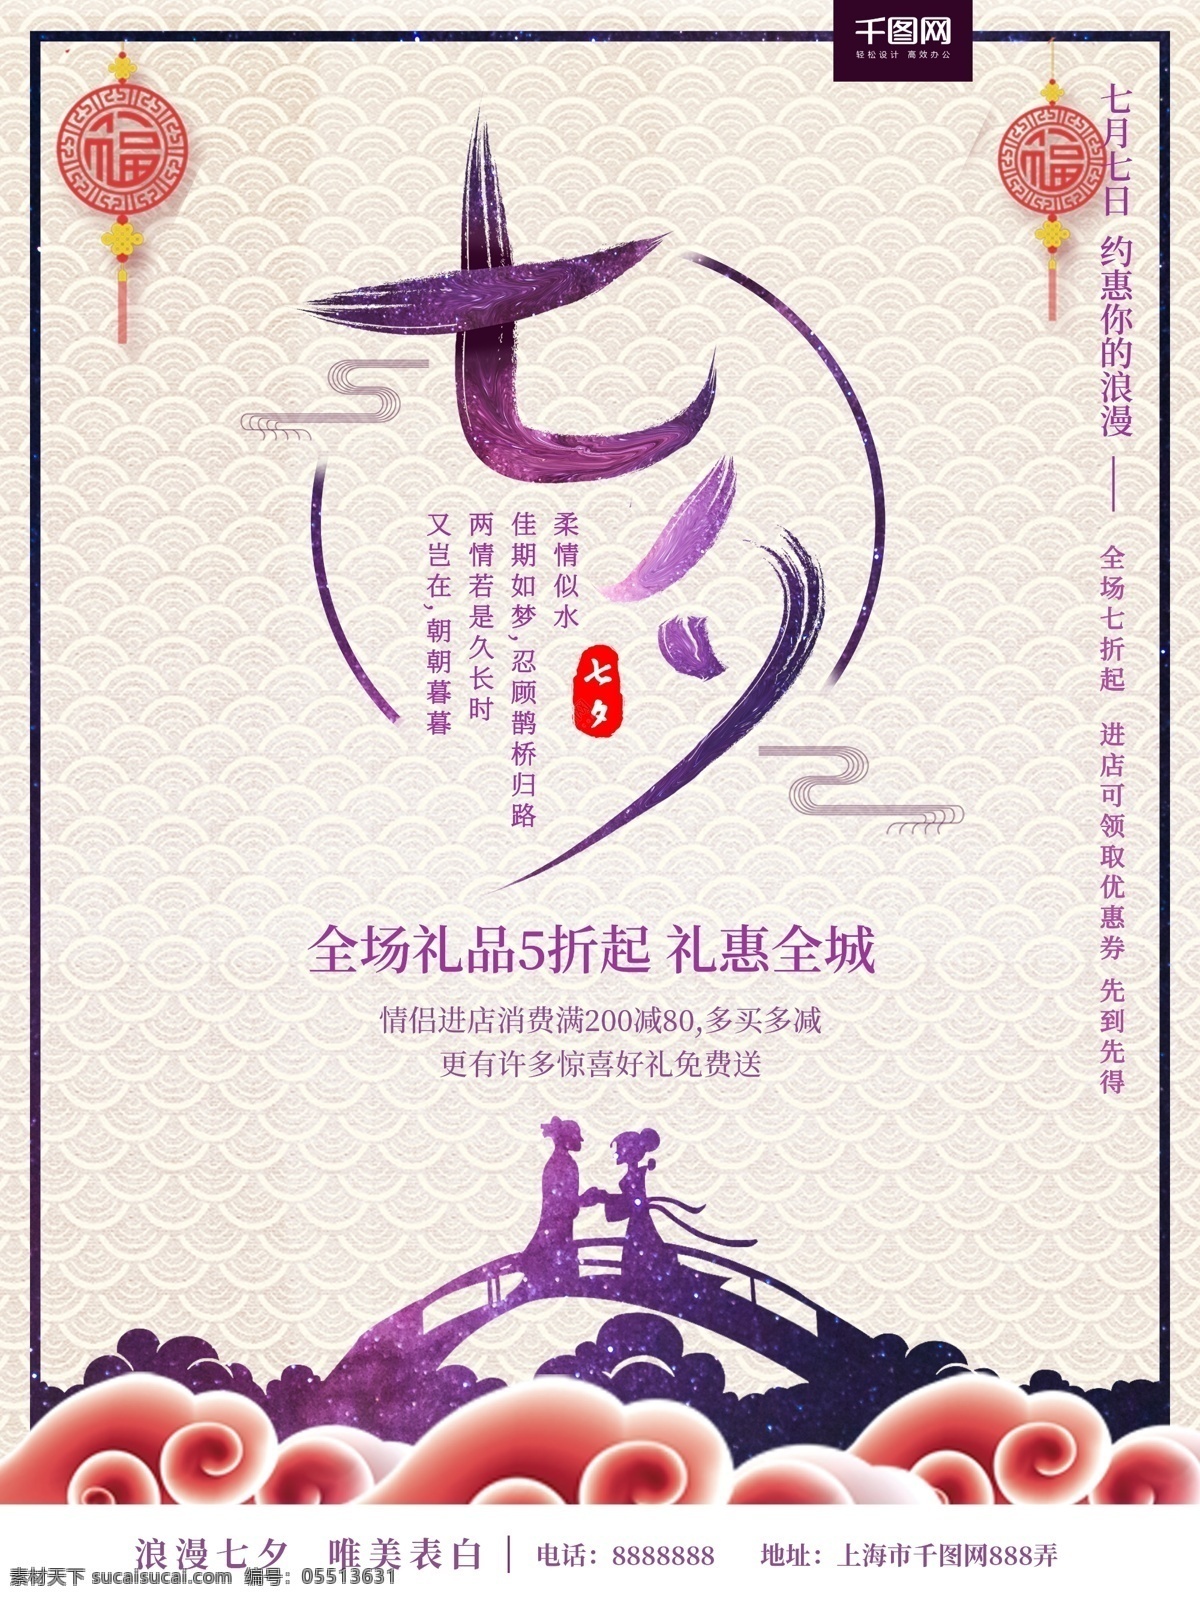 简约 七月 七 浪漫 七夕 促销 节日 宣传海报 宣传 七月七 海报